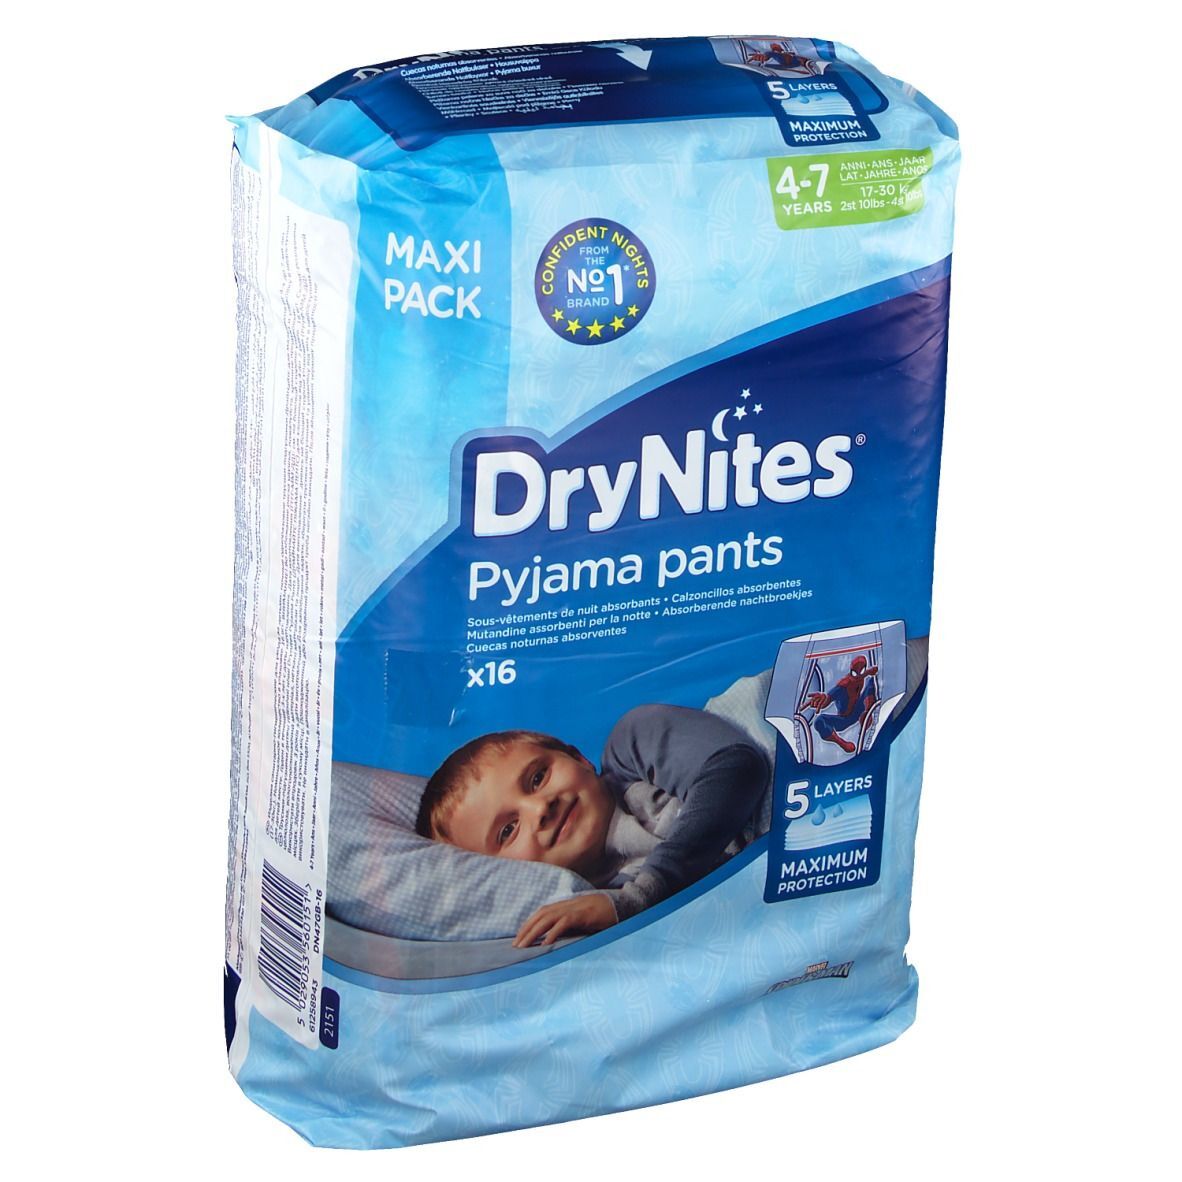 OP DE LOCHT Huggies DryNites® 4 - 7 Jahre Jungen